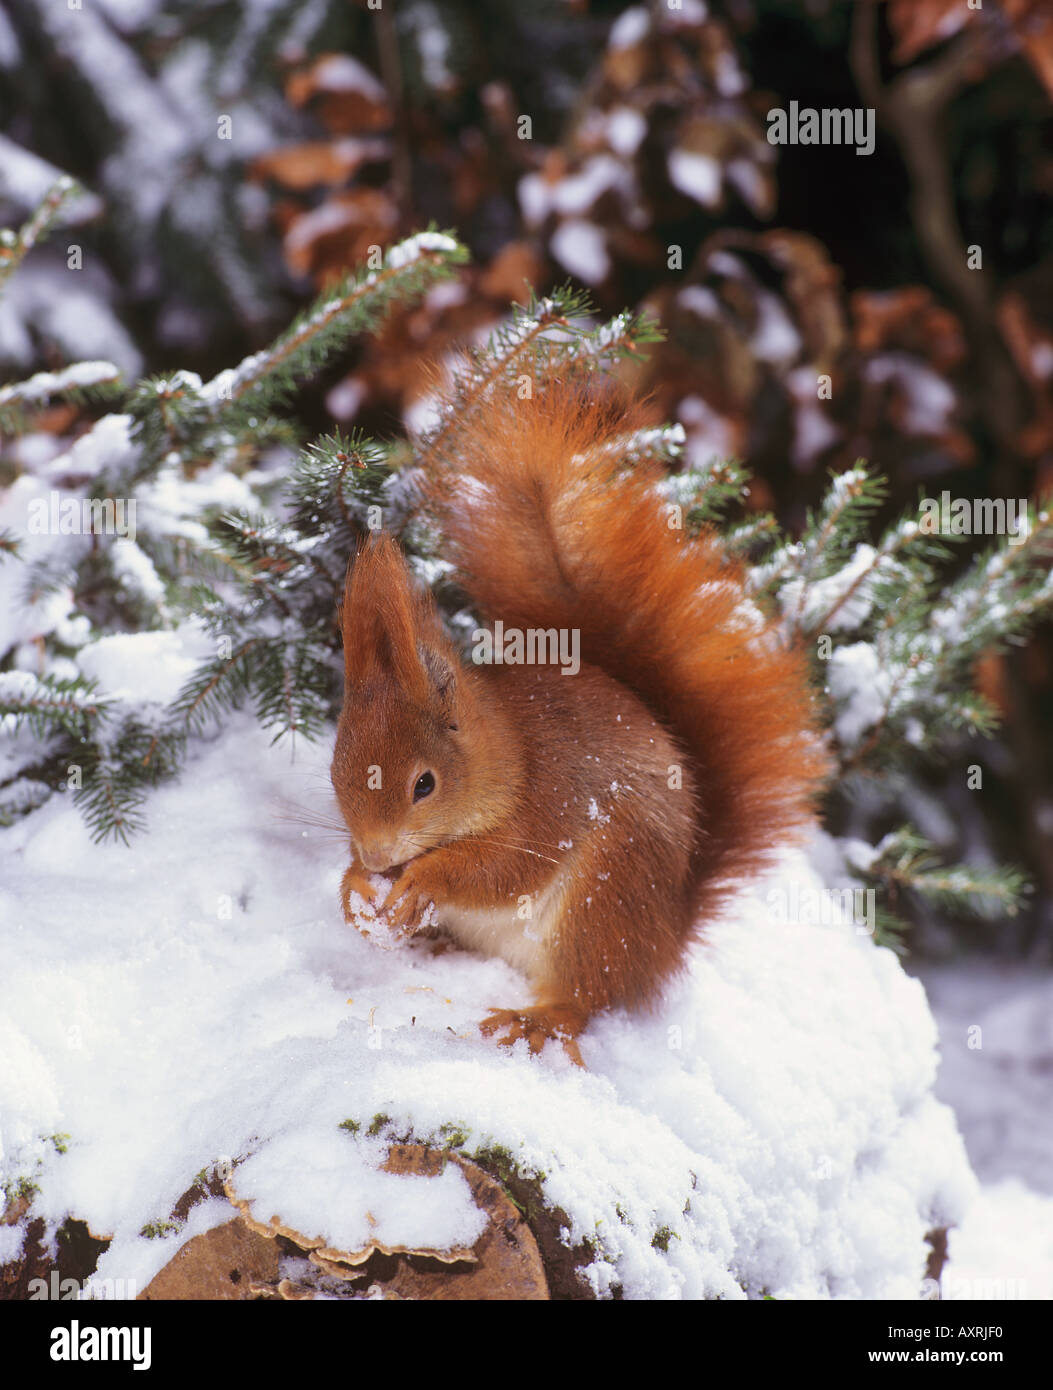 European red squirrel in snow Sciurus vulgaris Stock Photo